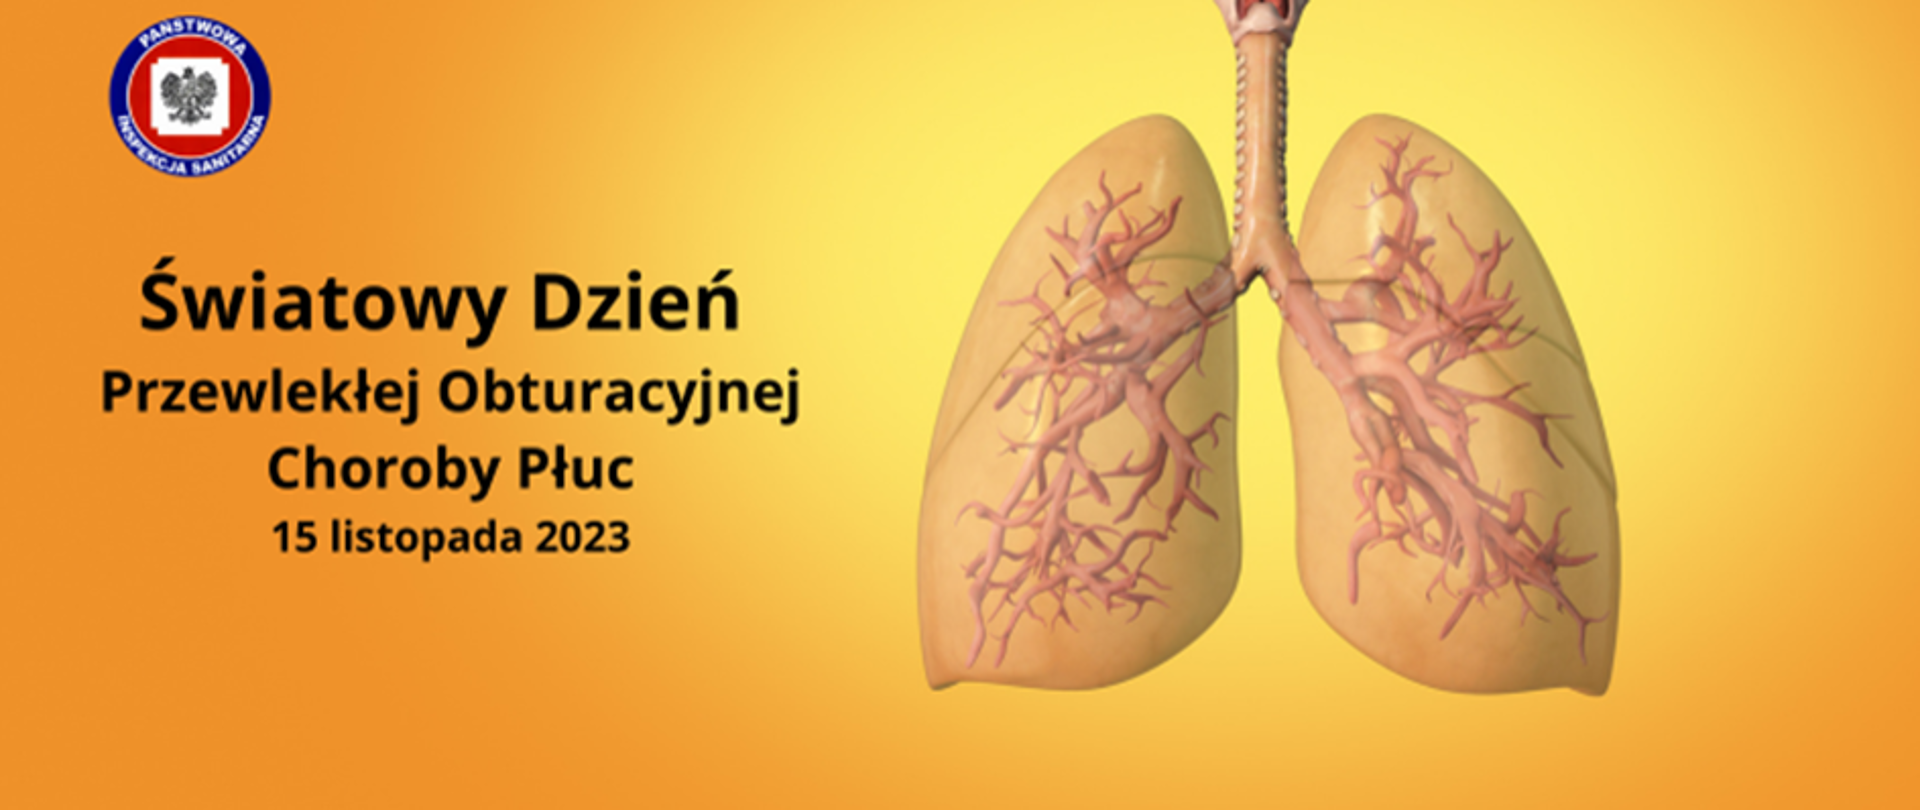 Światowy Dzień Przewlekłej Obstrukcyjnej Choroby Płuc